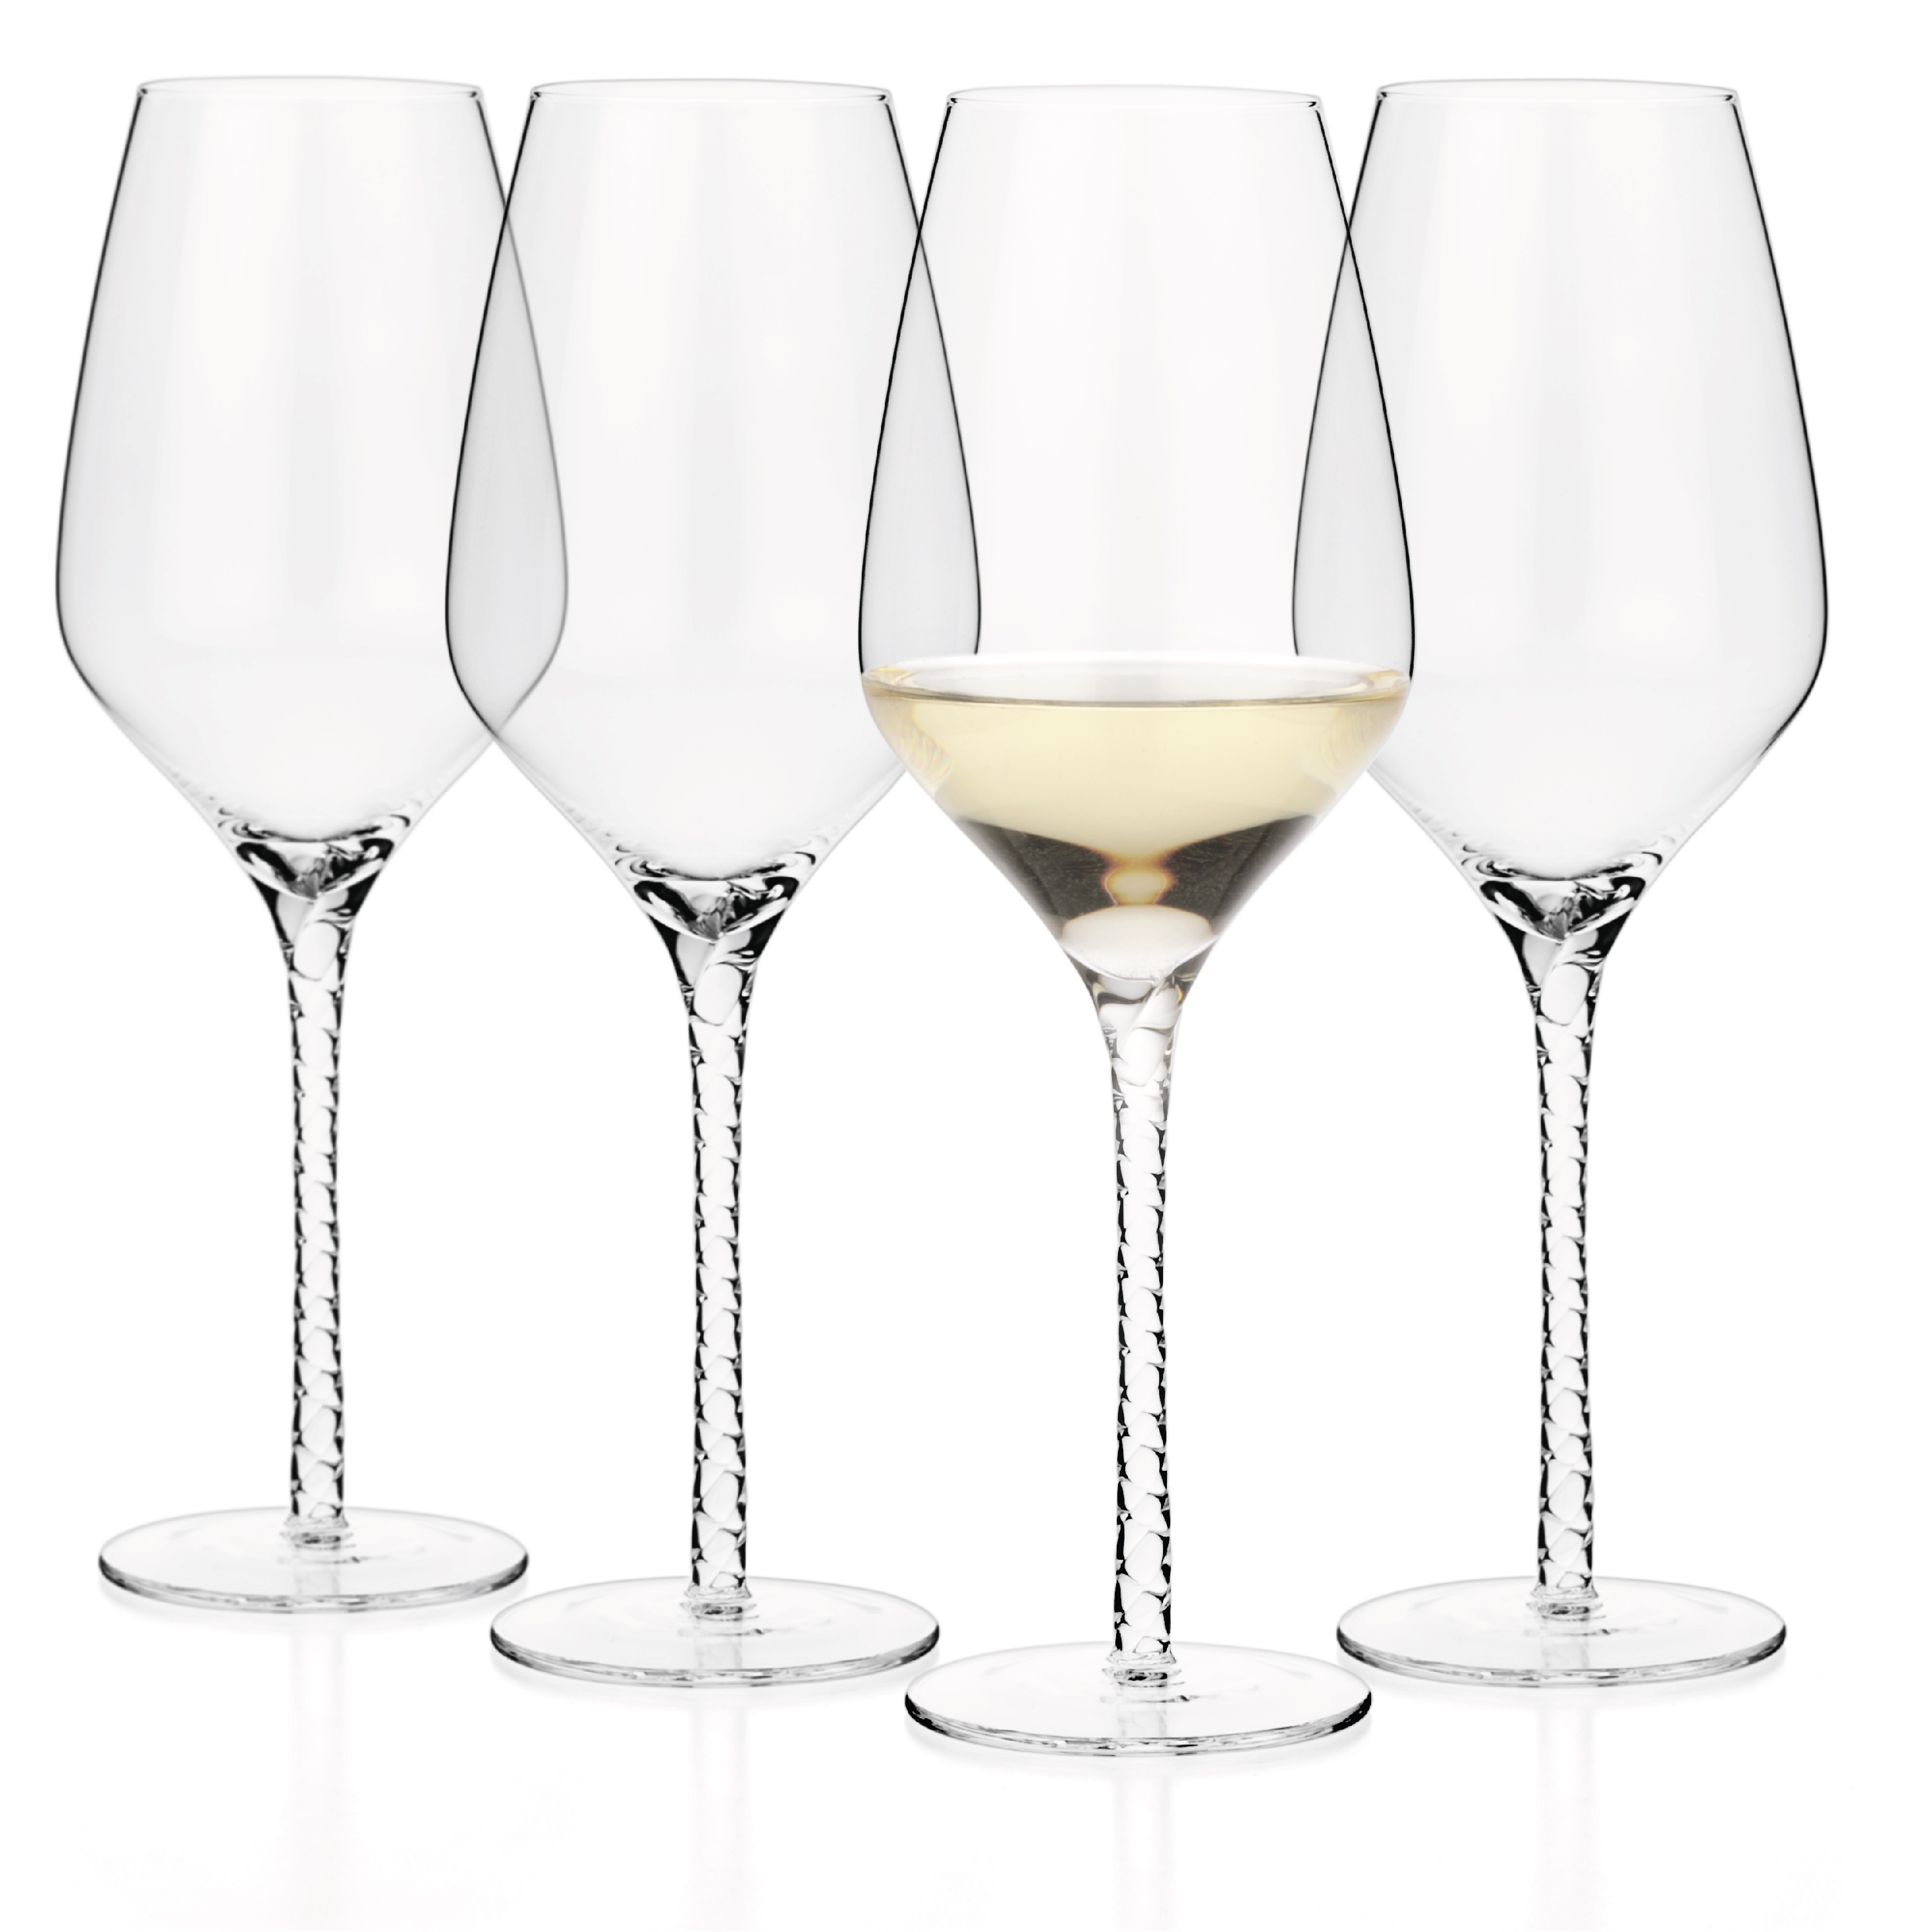 https://www.luxbe.com/images/detailed/4/white-wine-glasses-19-fl-oz.jpg